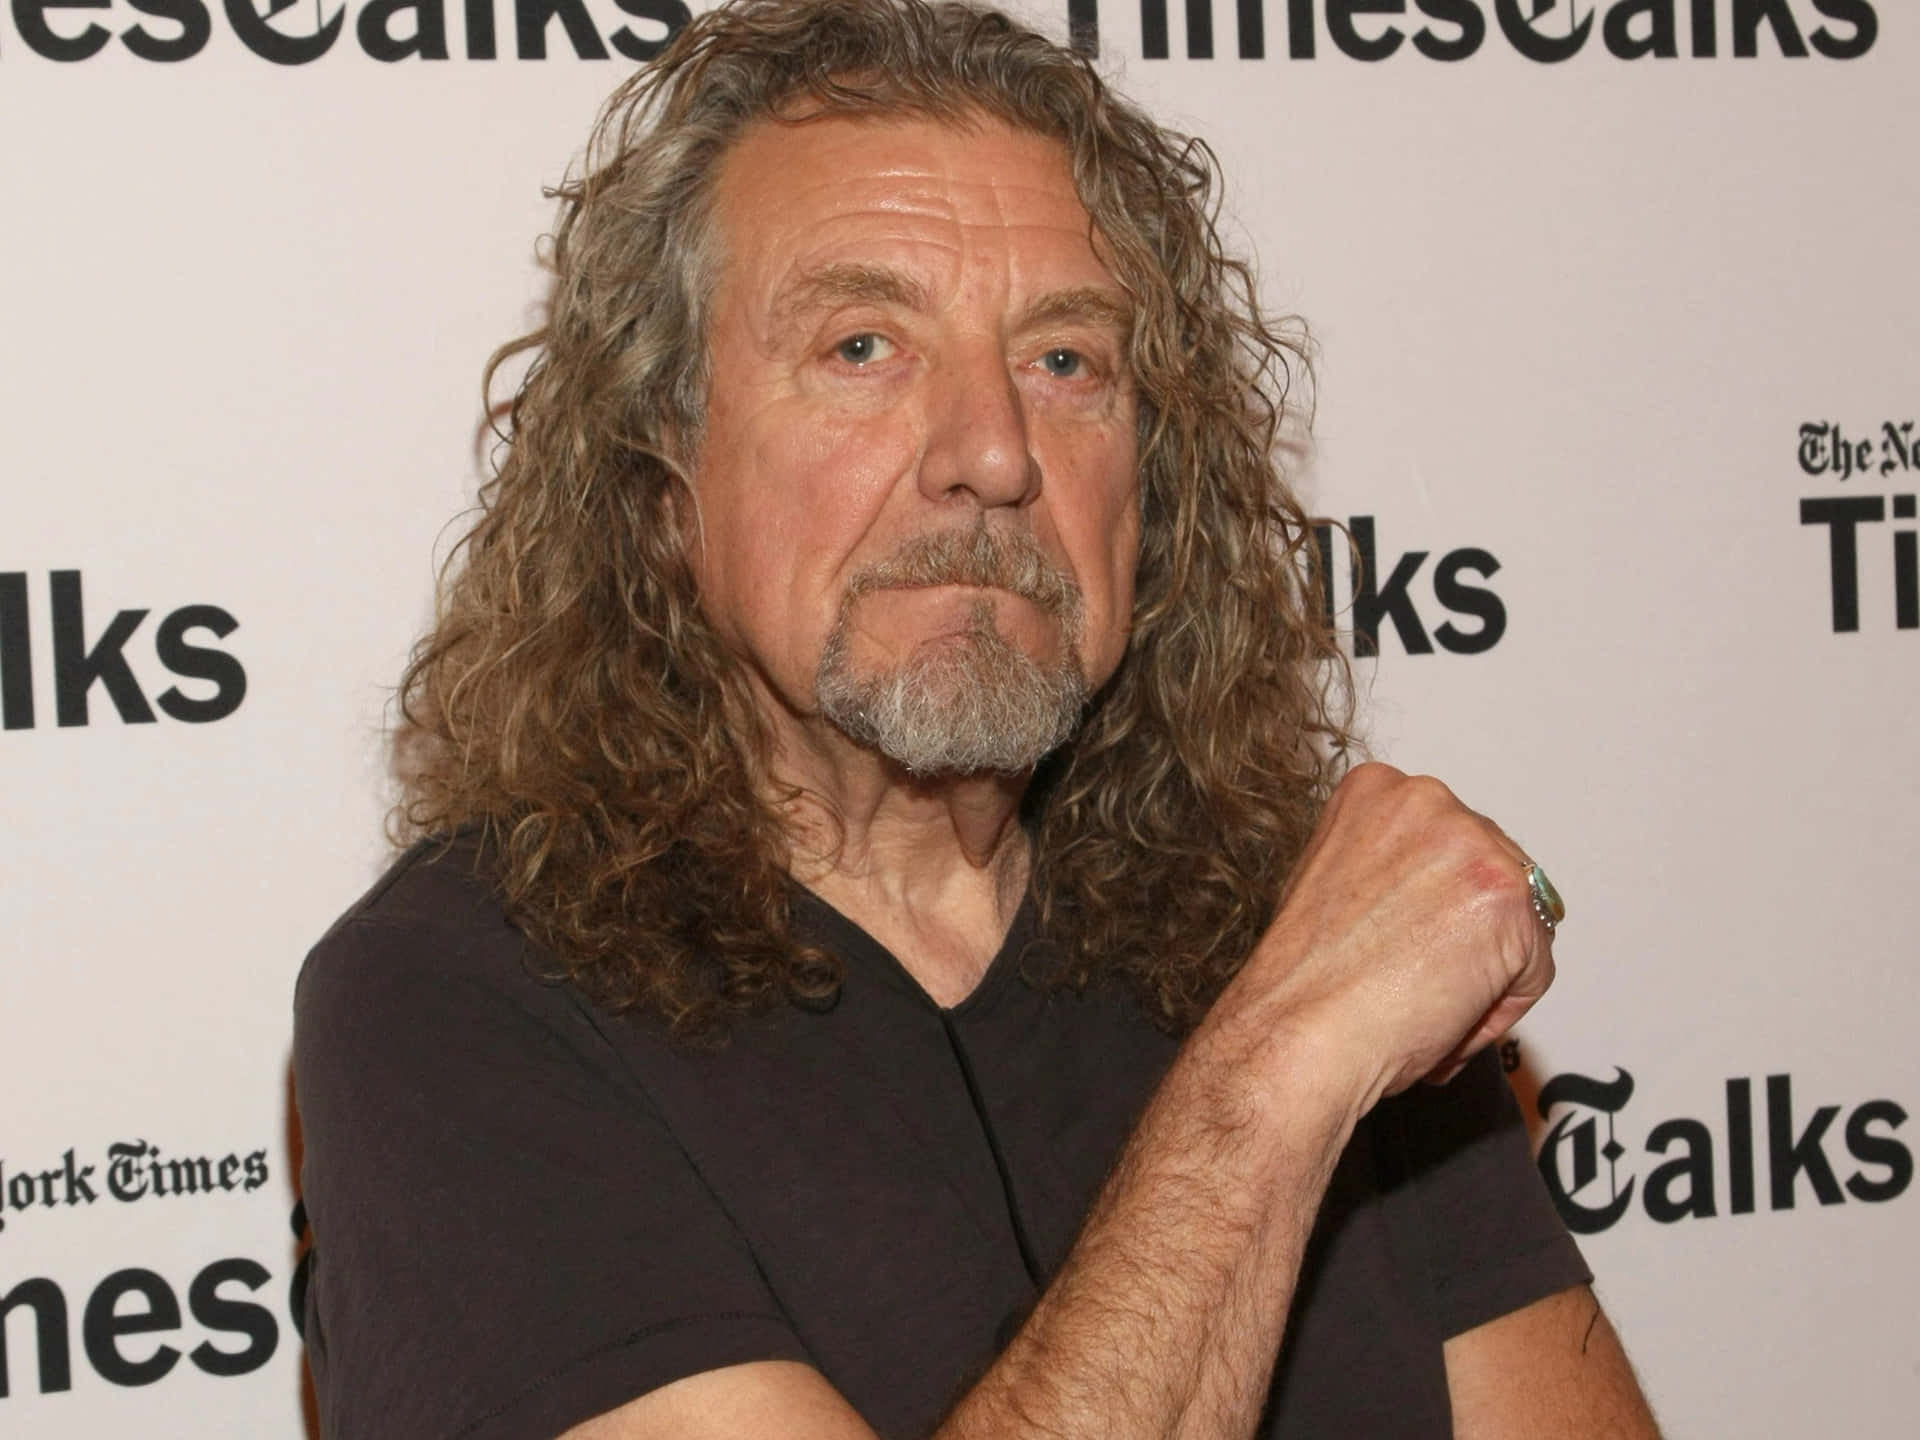 Robert Plant, the Lead Singer of Led Zeppelin